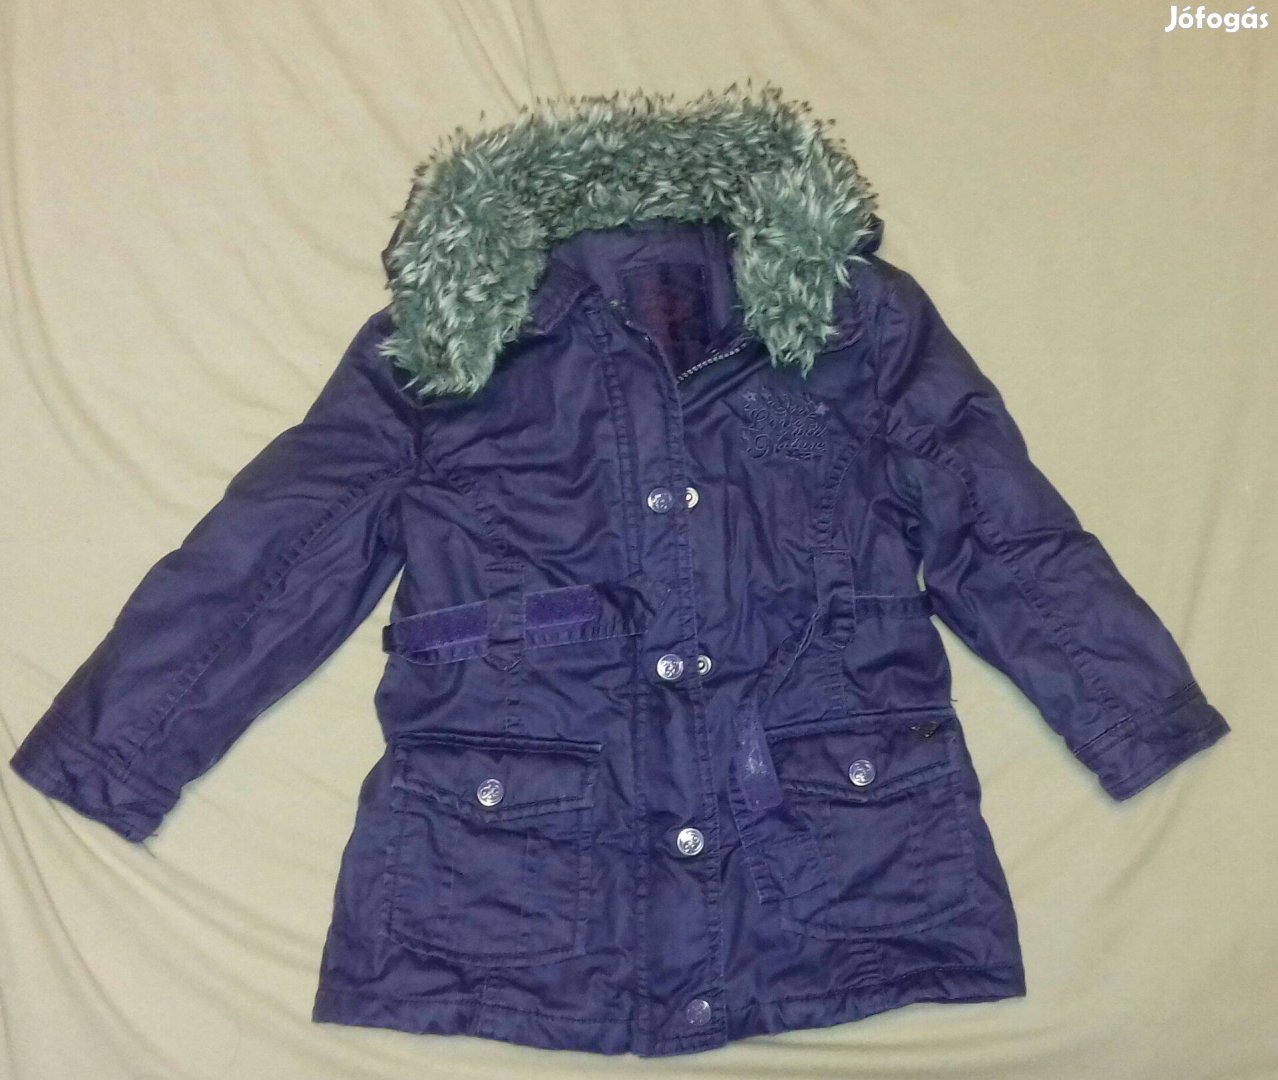 Gyönyörű lila színű szőrmegalléros átmeneti, őszi kabát, 2in1. 98-104